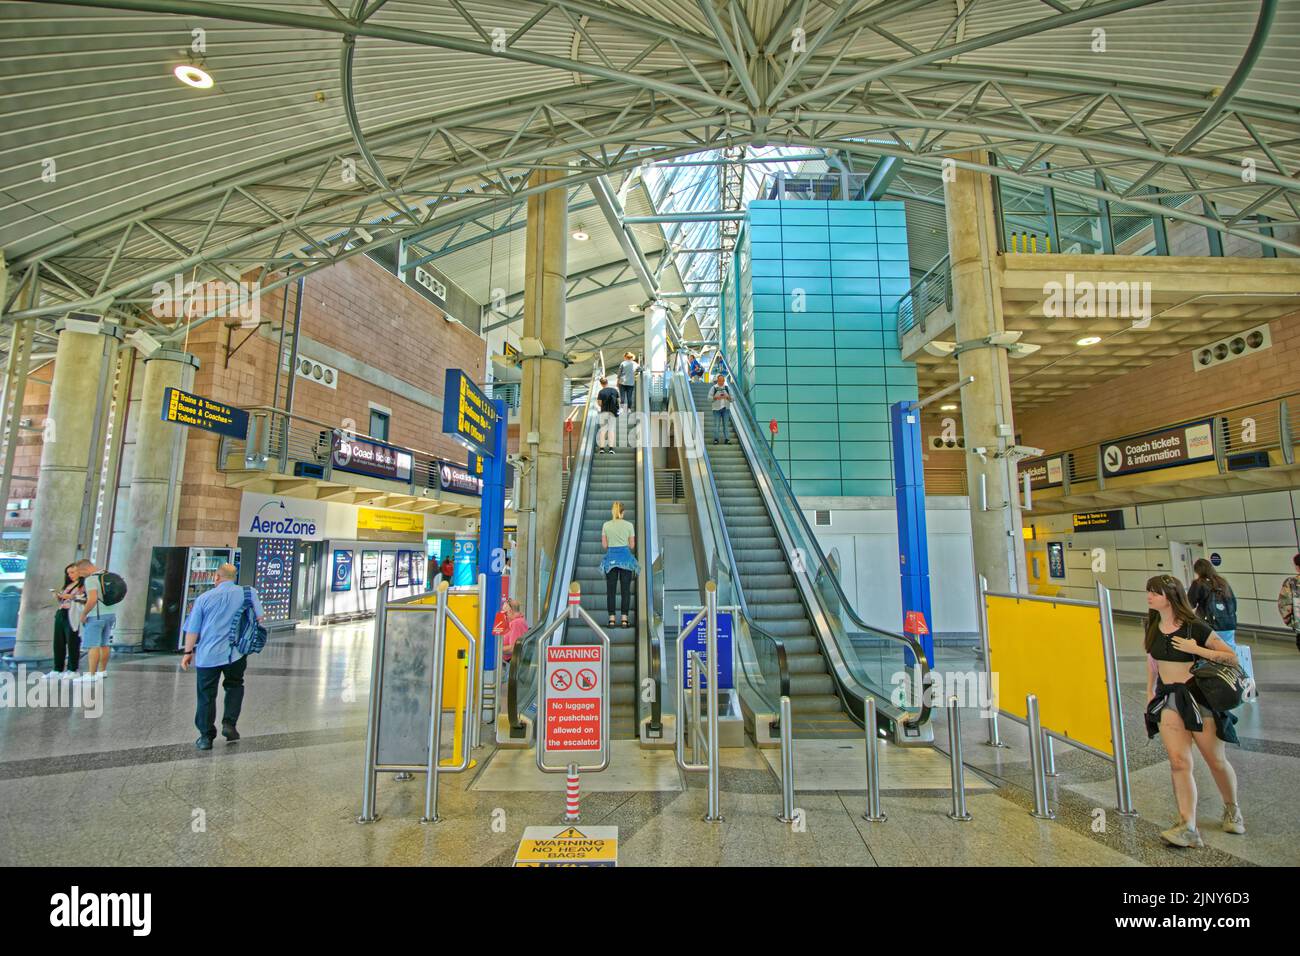 Gare et tramway de l'aéroport de Manchester, Manchester, Angleterre. Banque D'Images